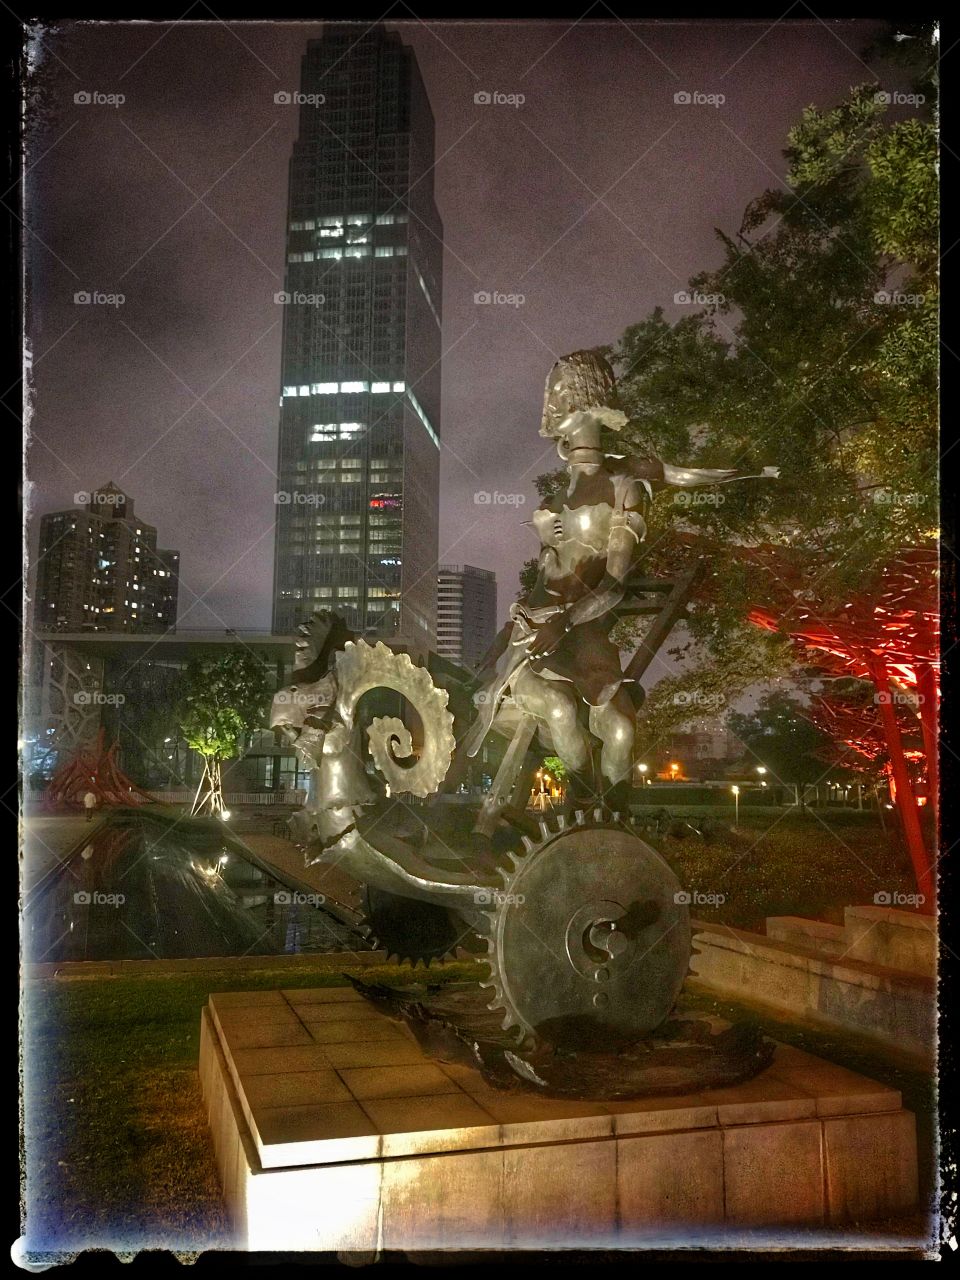 Shanghai Jing’An Sculpture Park
上海， 静安区， 公园